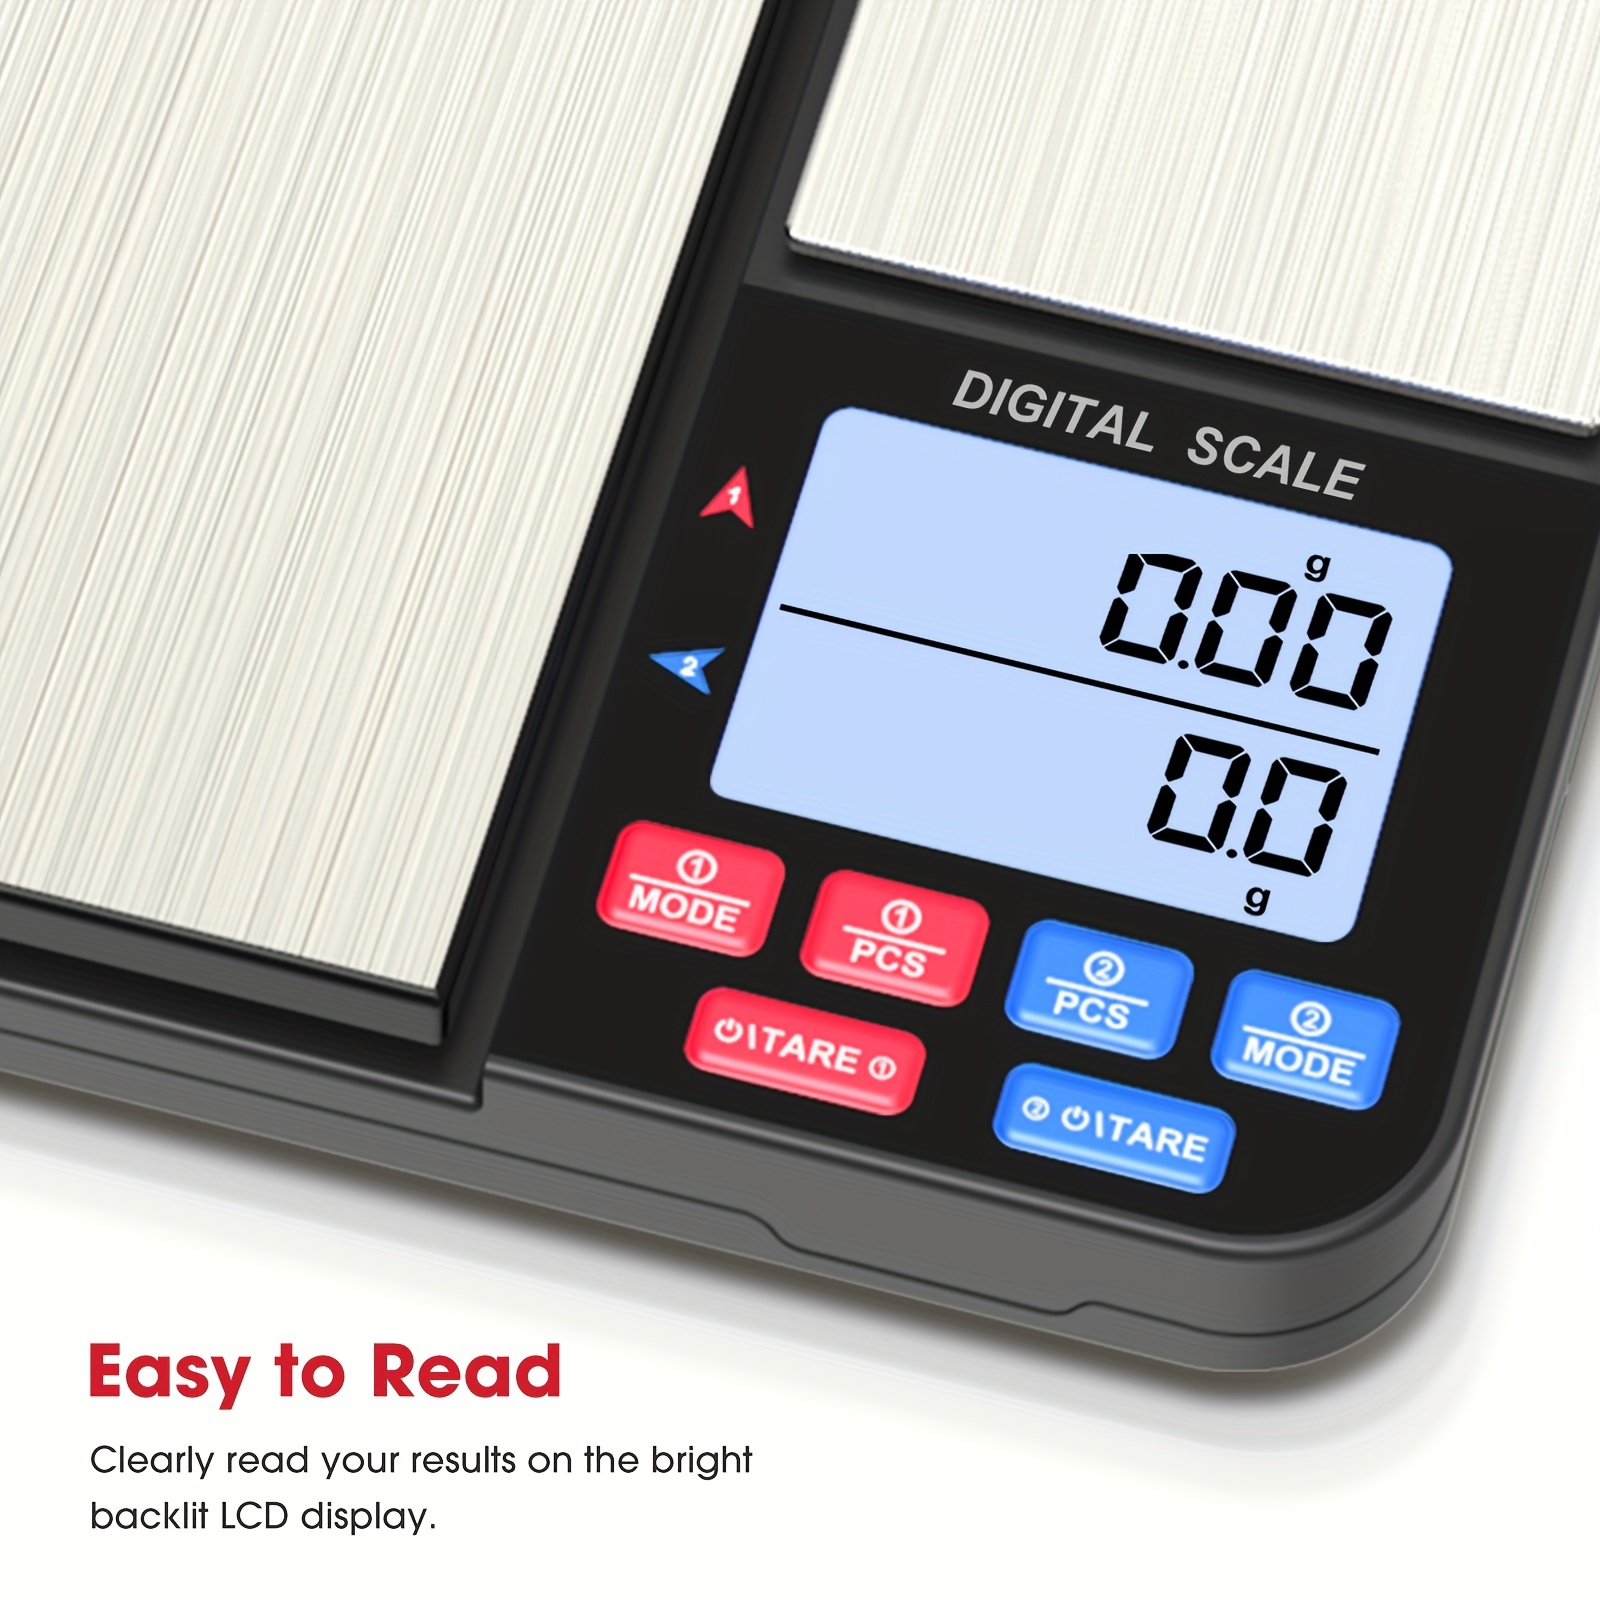 Báscula digital de cocina báscula de alimentos, báscula de cocina USB,  escala de alimentos de 0.04 oz/1 g, 11 lb/5 kg, función de pantalla LCD